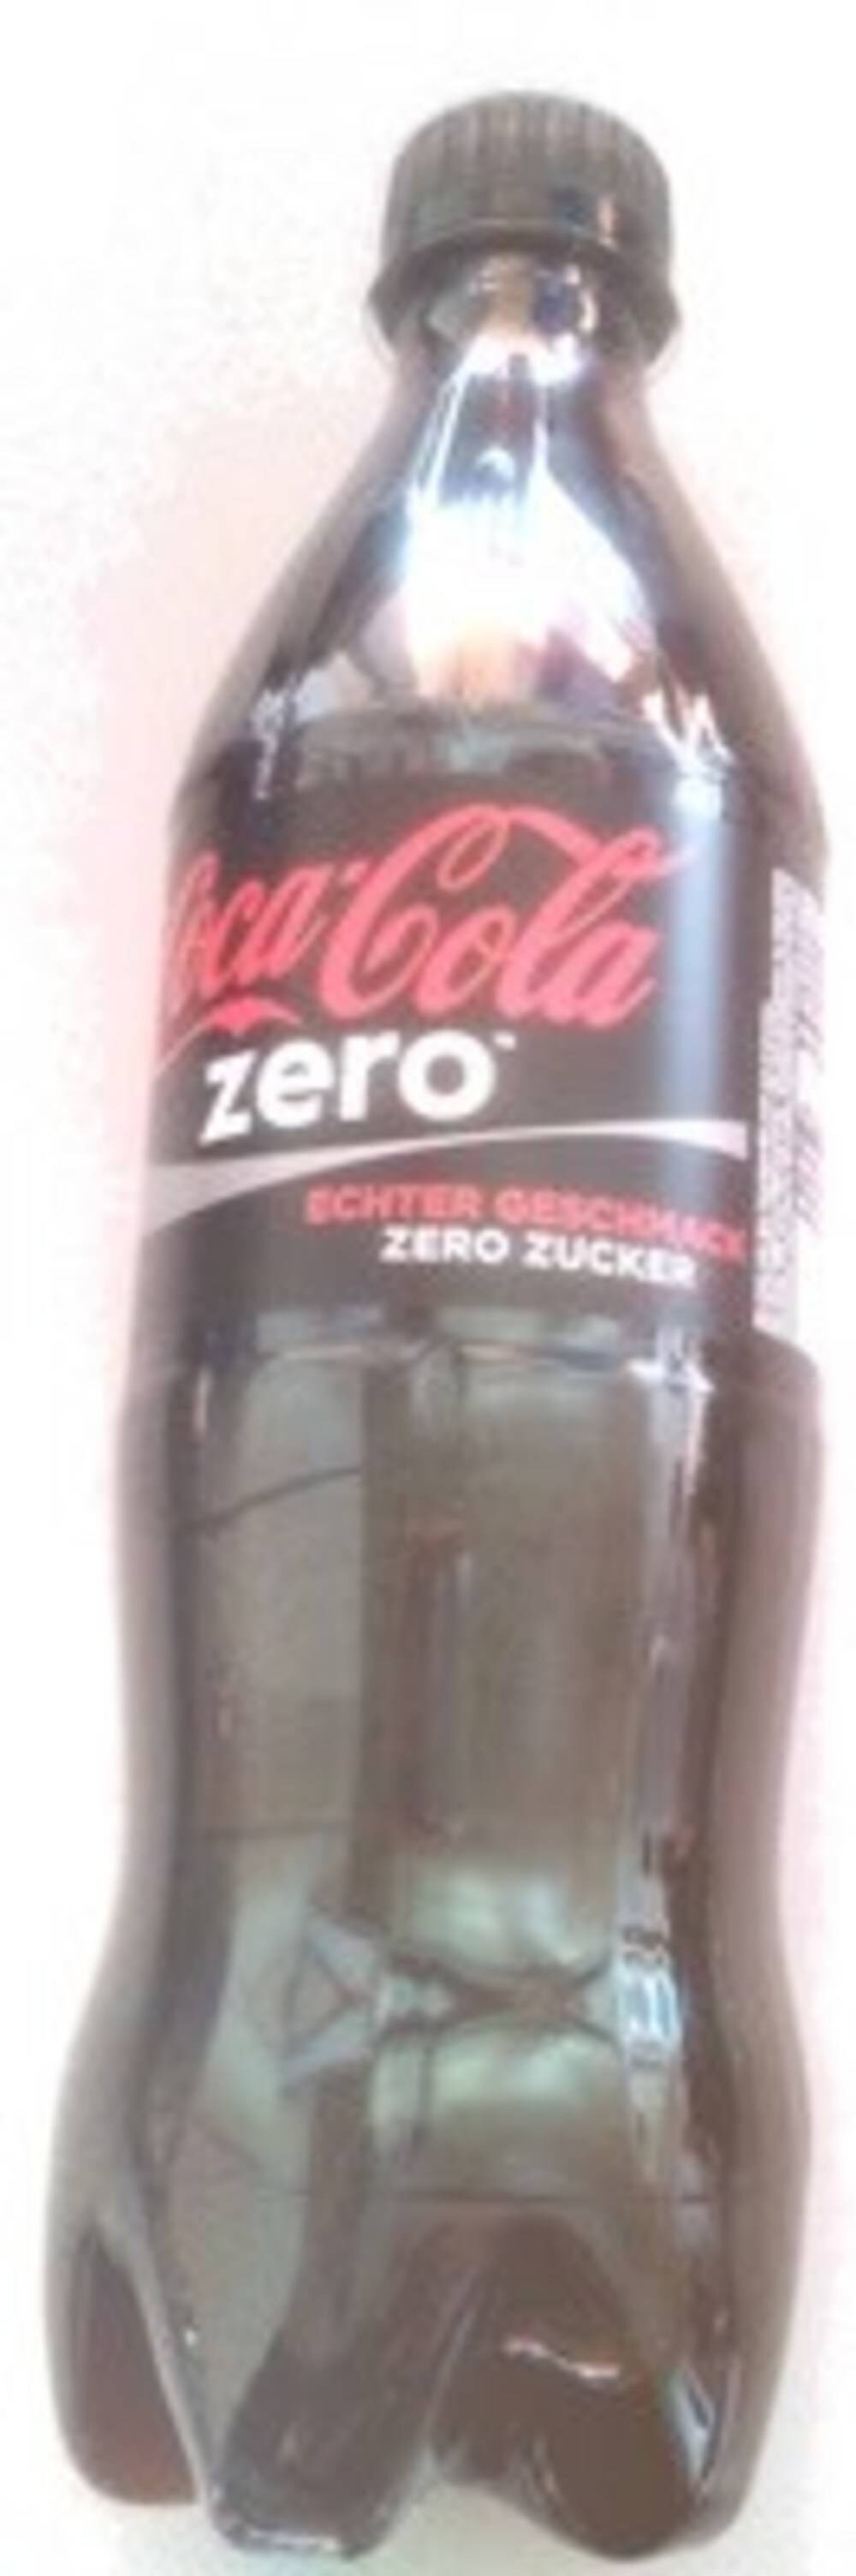 Coca Cola Zero - Product - en